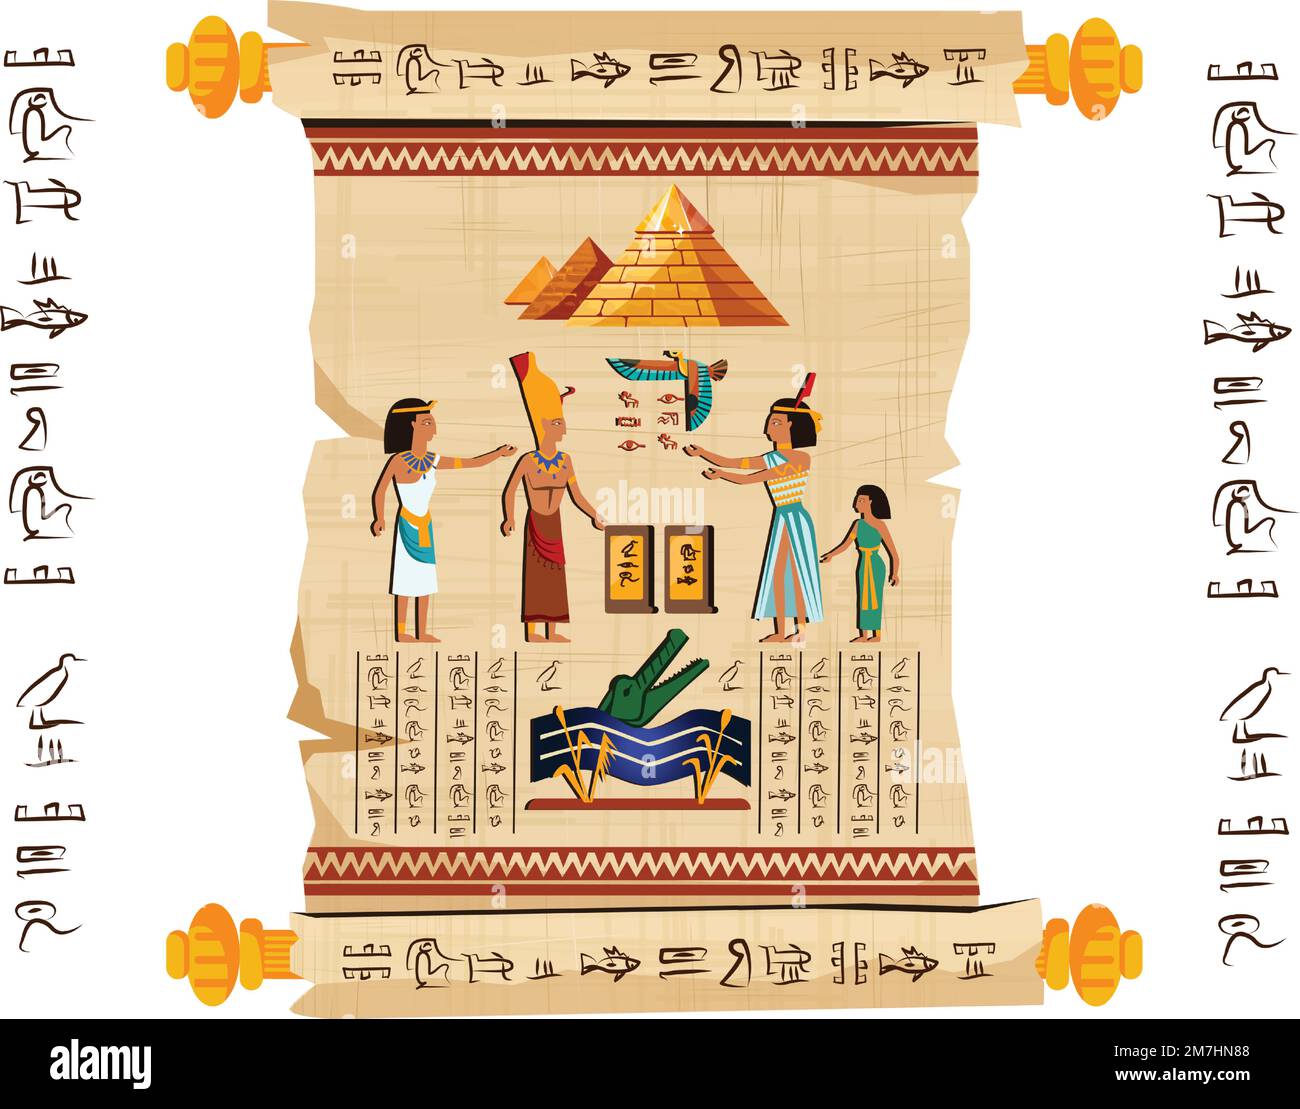 Alte ägyptische Papyrus-Schriftrolle mit Holzstäbchen-Cartoon-Vektor. Antikes Papier mit Hieroglyphen und religiösen Symbolen der ägyptischen Kultur, antiken Göttern, Pyramiden und menschlichen Figuren, isoliert auf Weiß Stock Vektor